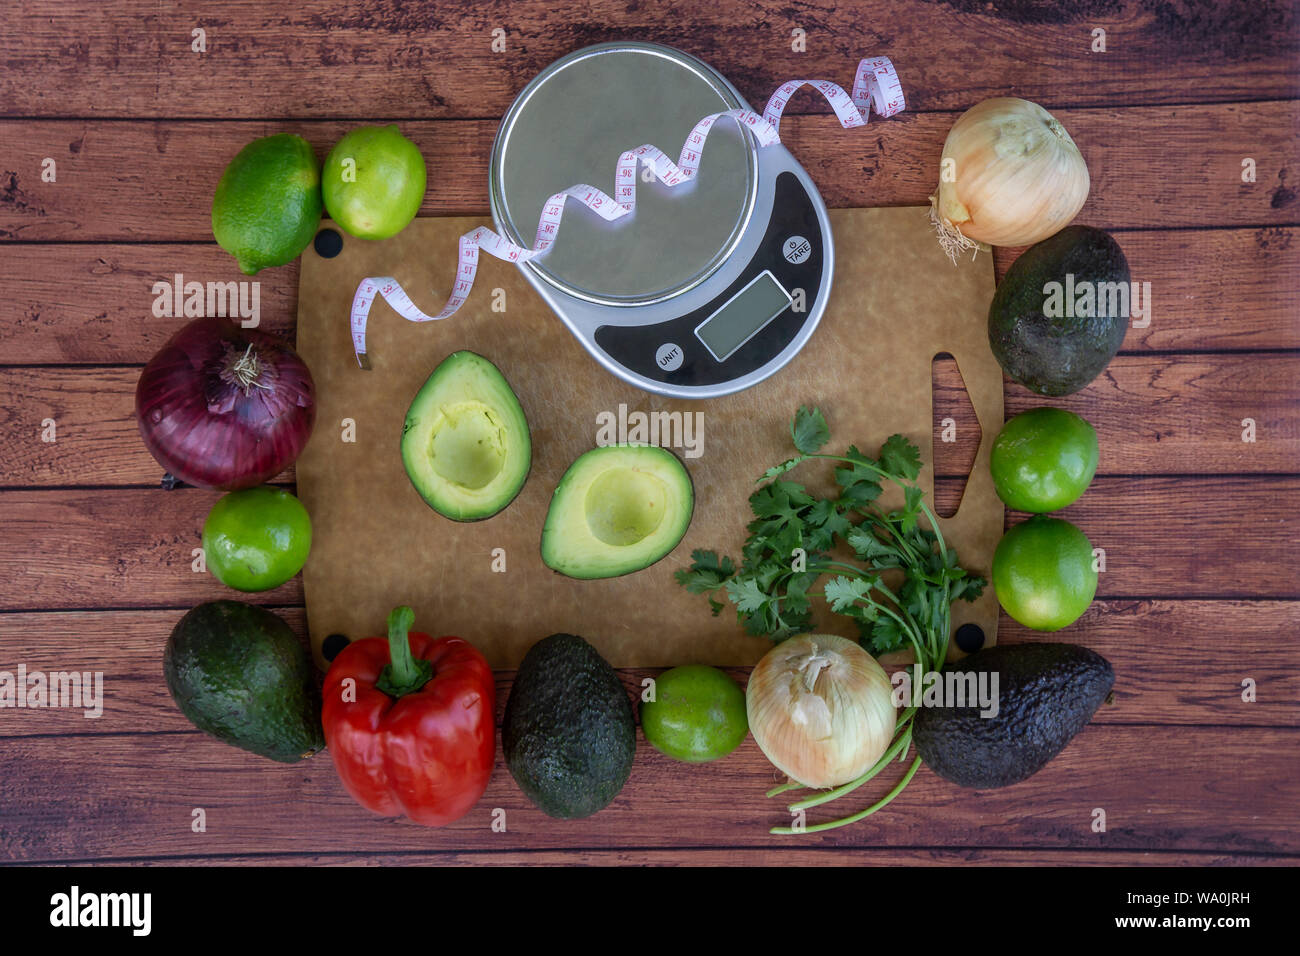 Haut de la vue de dessus de la guacamole frais ingrédients avec échelle de poids et ruban à mesurer. L'avocat coupé en deux, la coriandre fraîche, poivron rouge, vert lim Banque D'Images